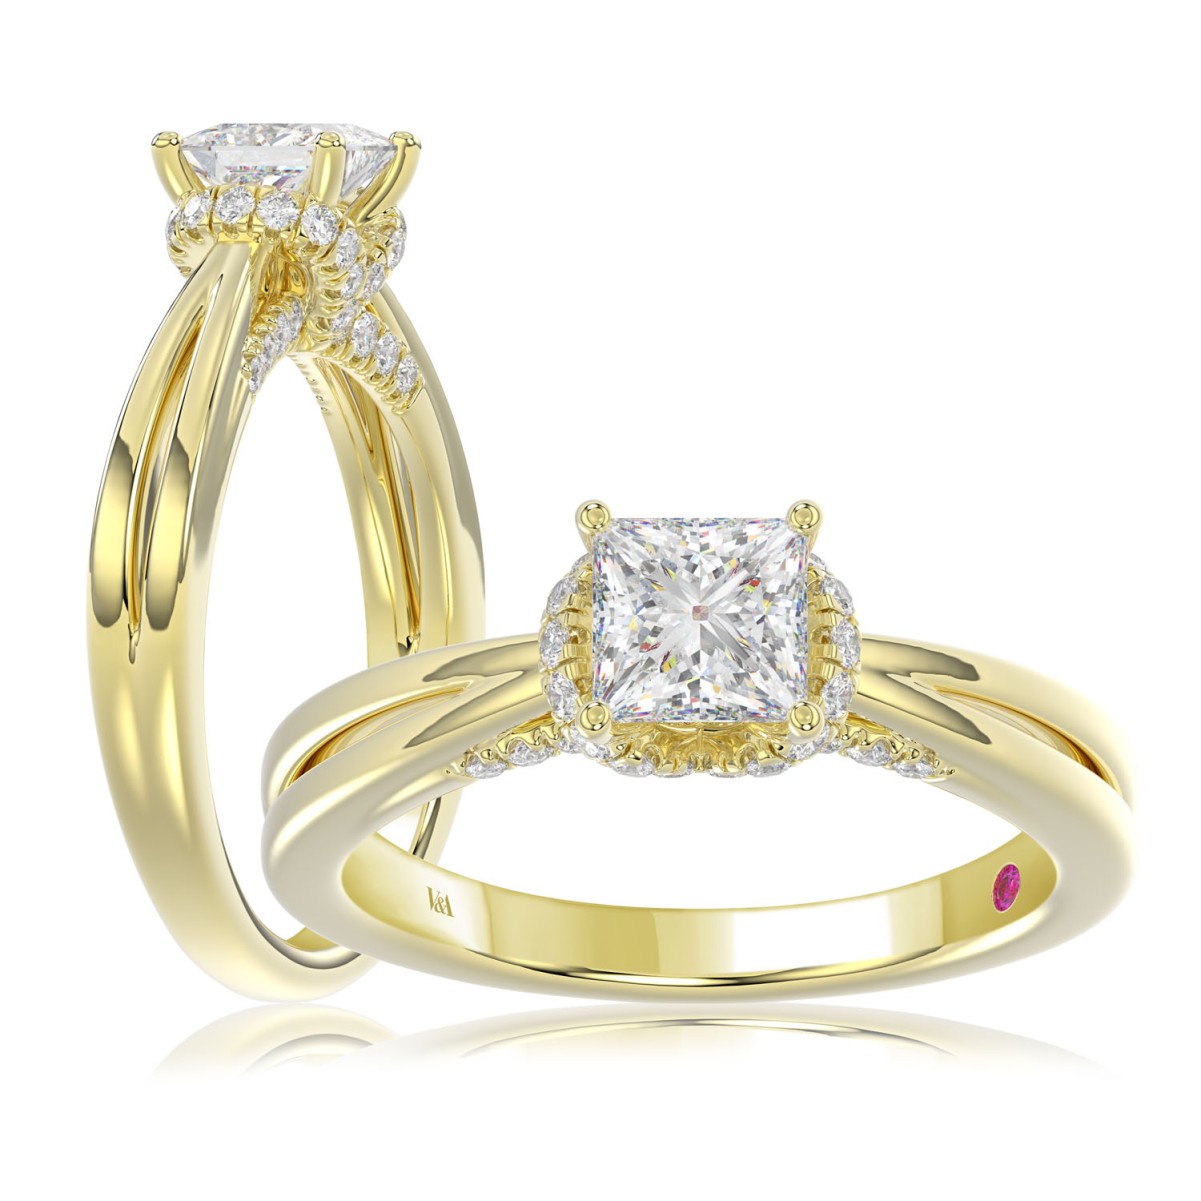 18K YELLOW GOLD 7/8CT ROUND/PRINCESS DIAMOND LADIES RING ( CENTER STONE 5/8 CT PRINCESS DIAMOND )